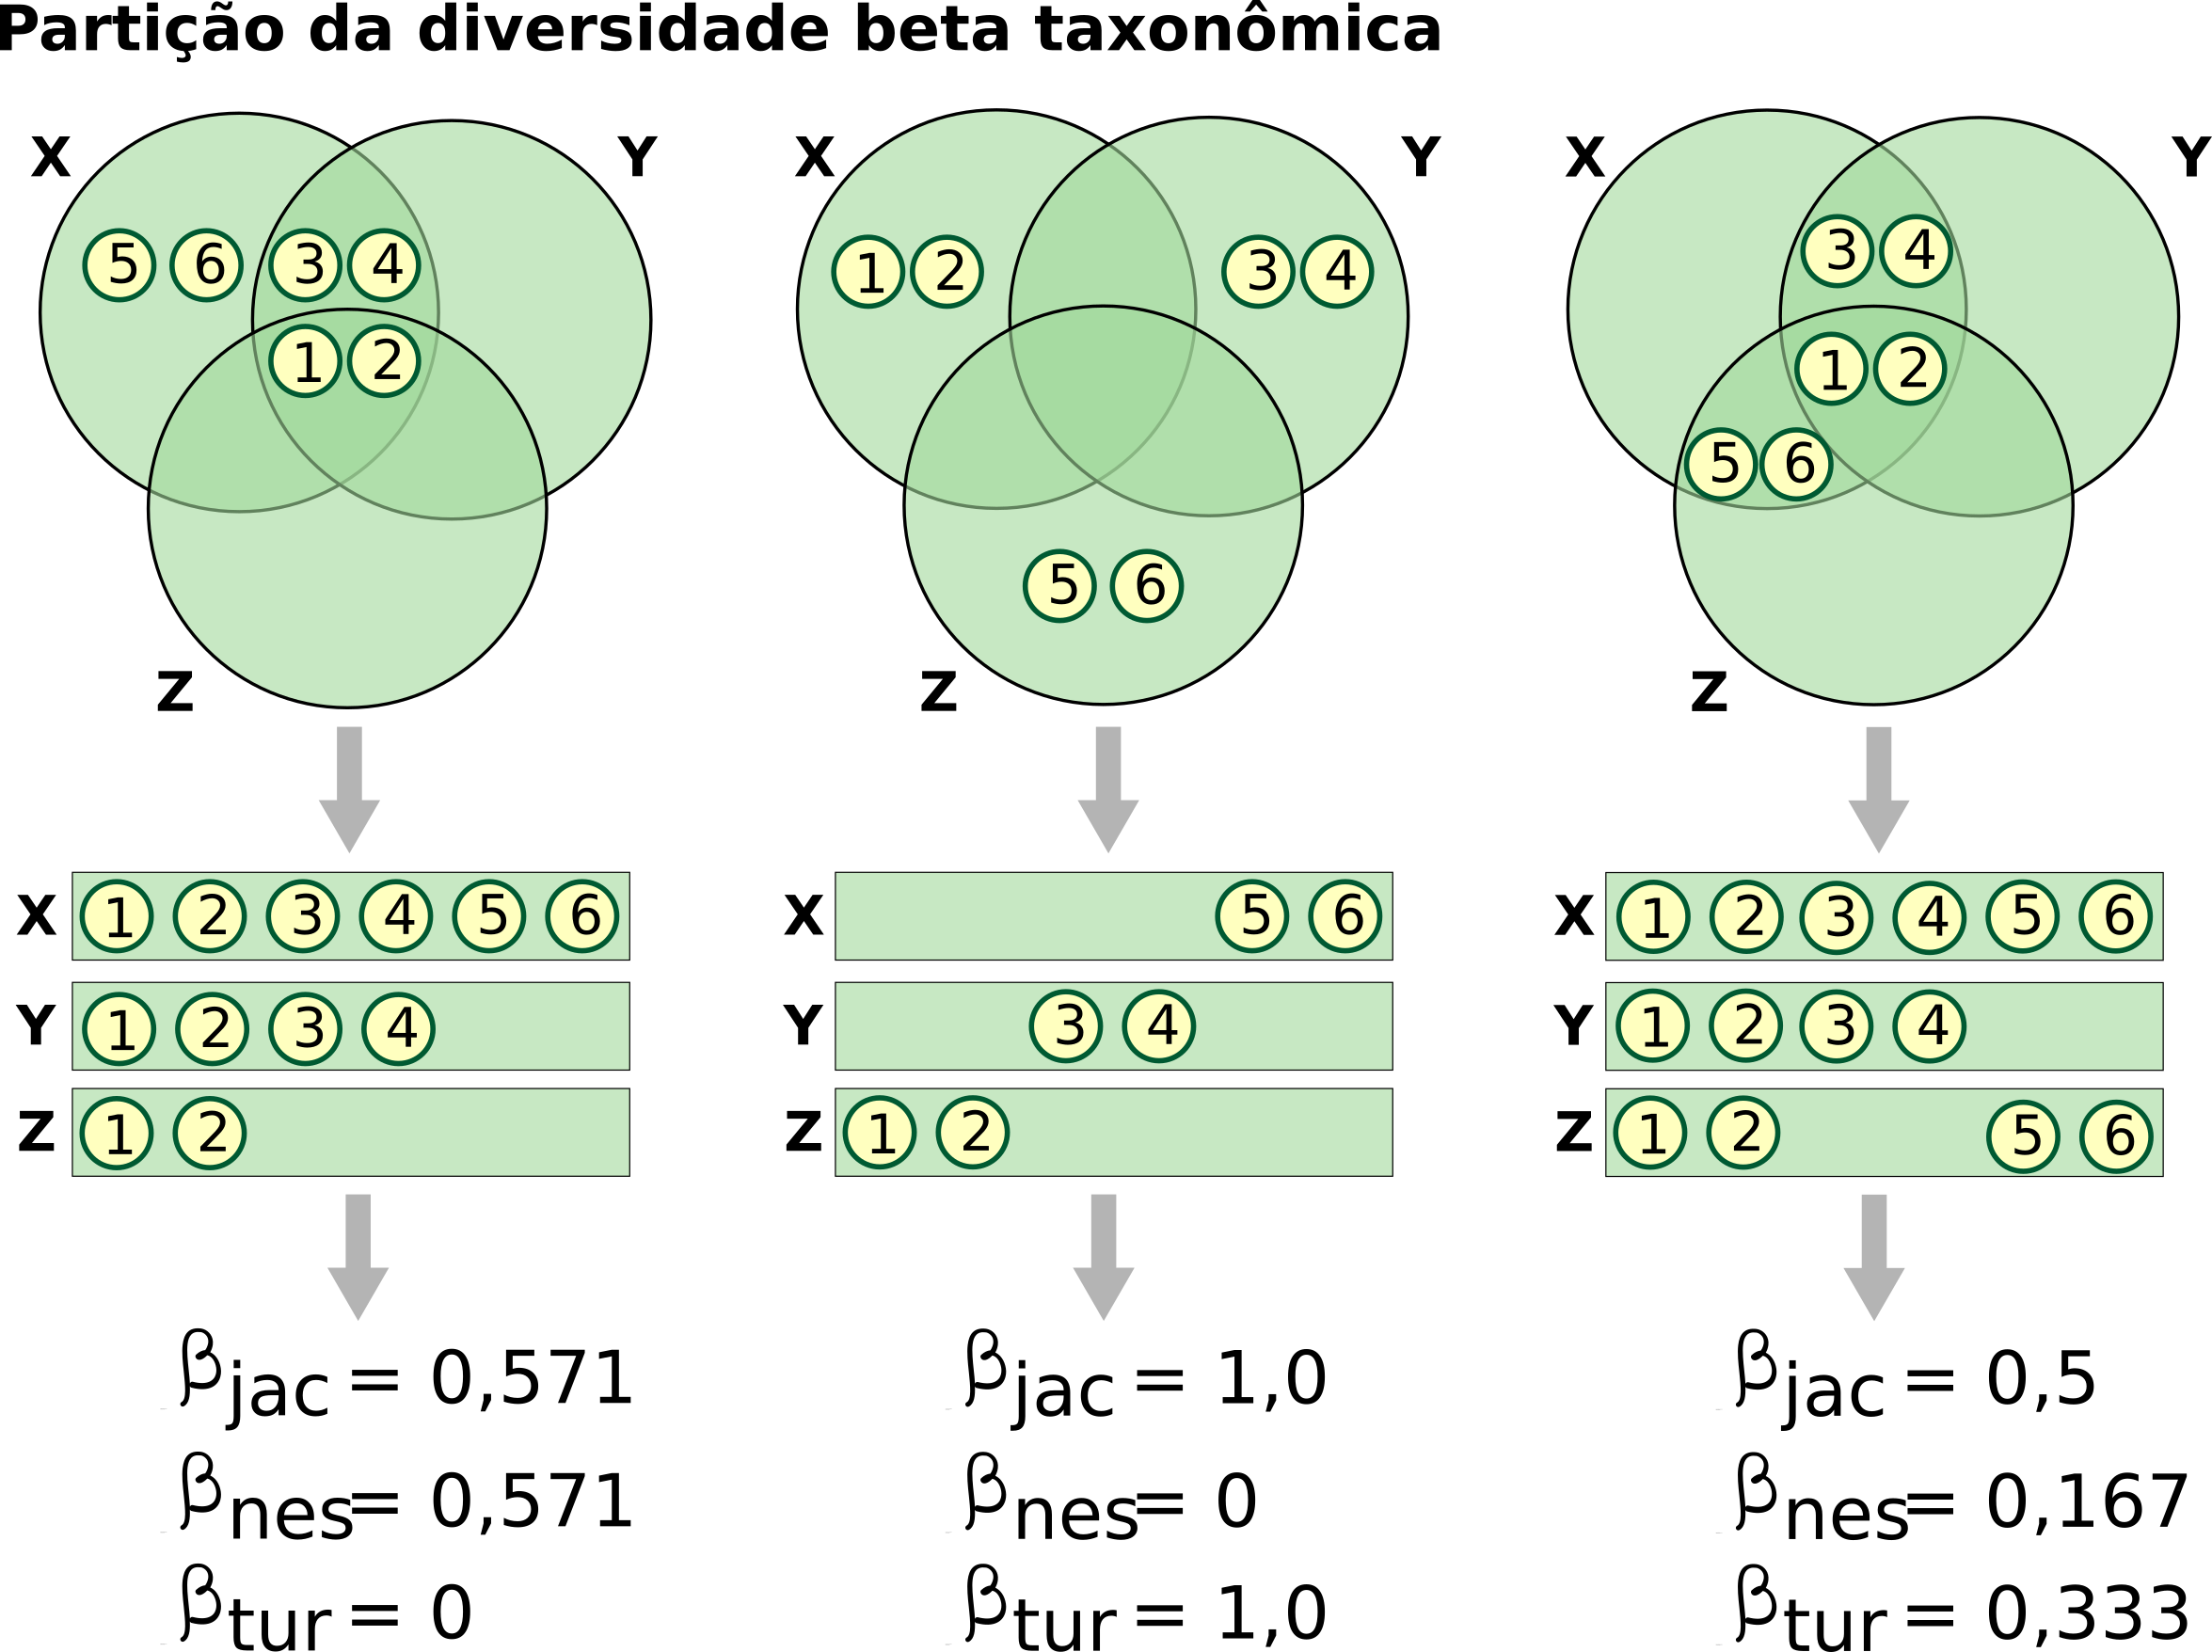 Partição da diversidade beta taxonômica. Os três cenários apresentados representam a diversidade beta explicada somente por substituição, aninhamento e uma combinação dos dois.